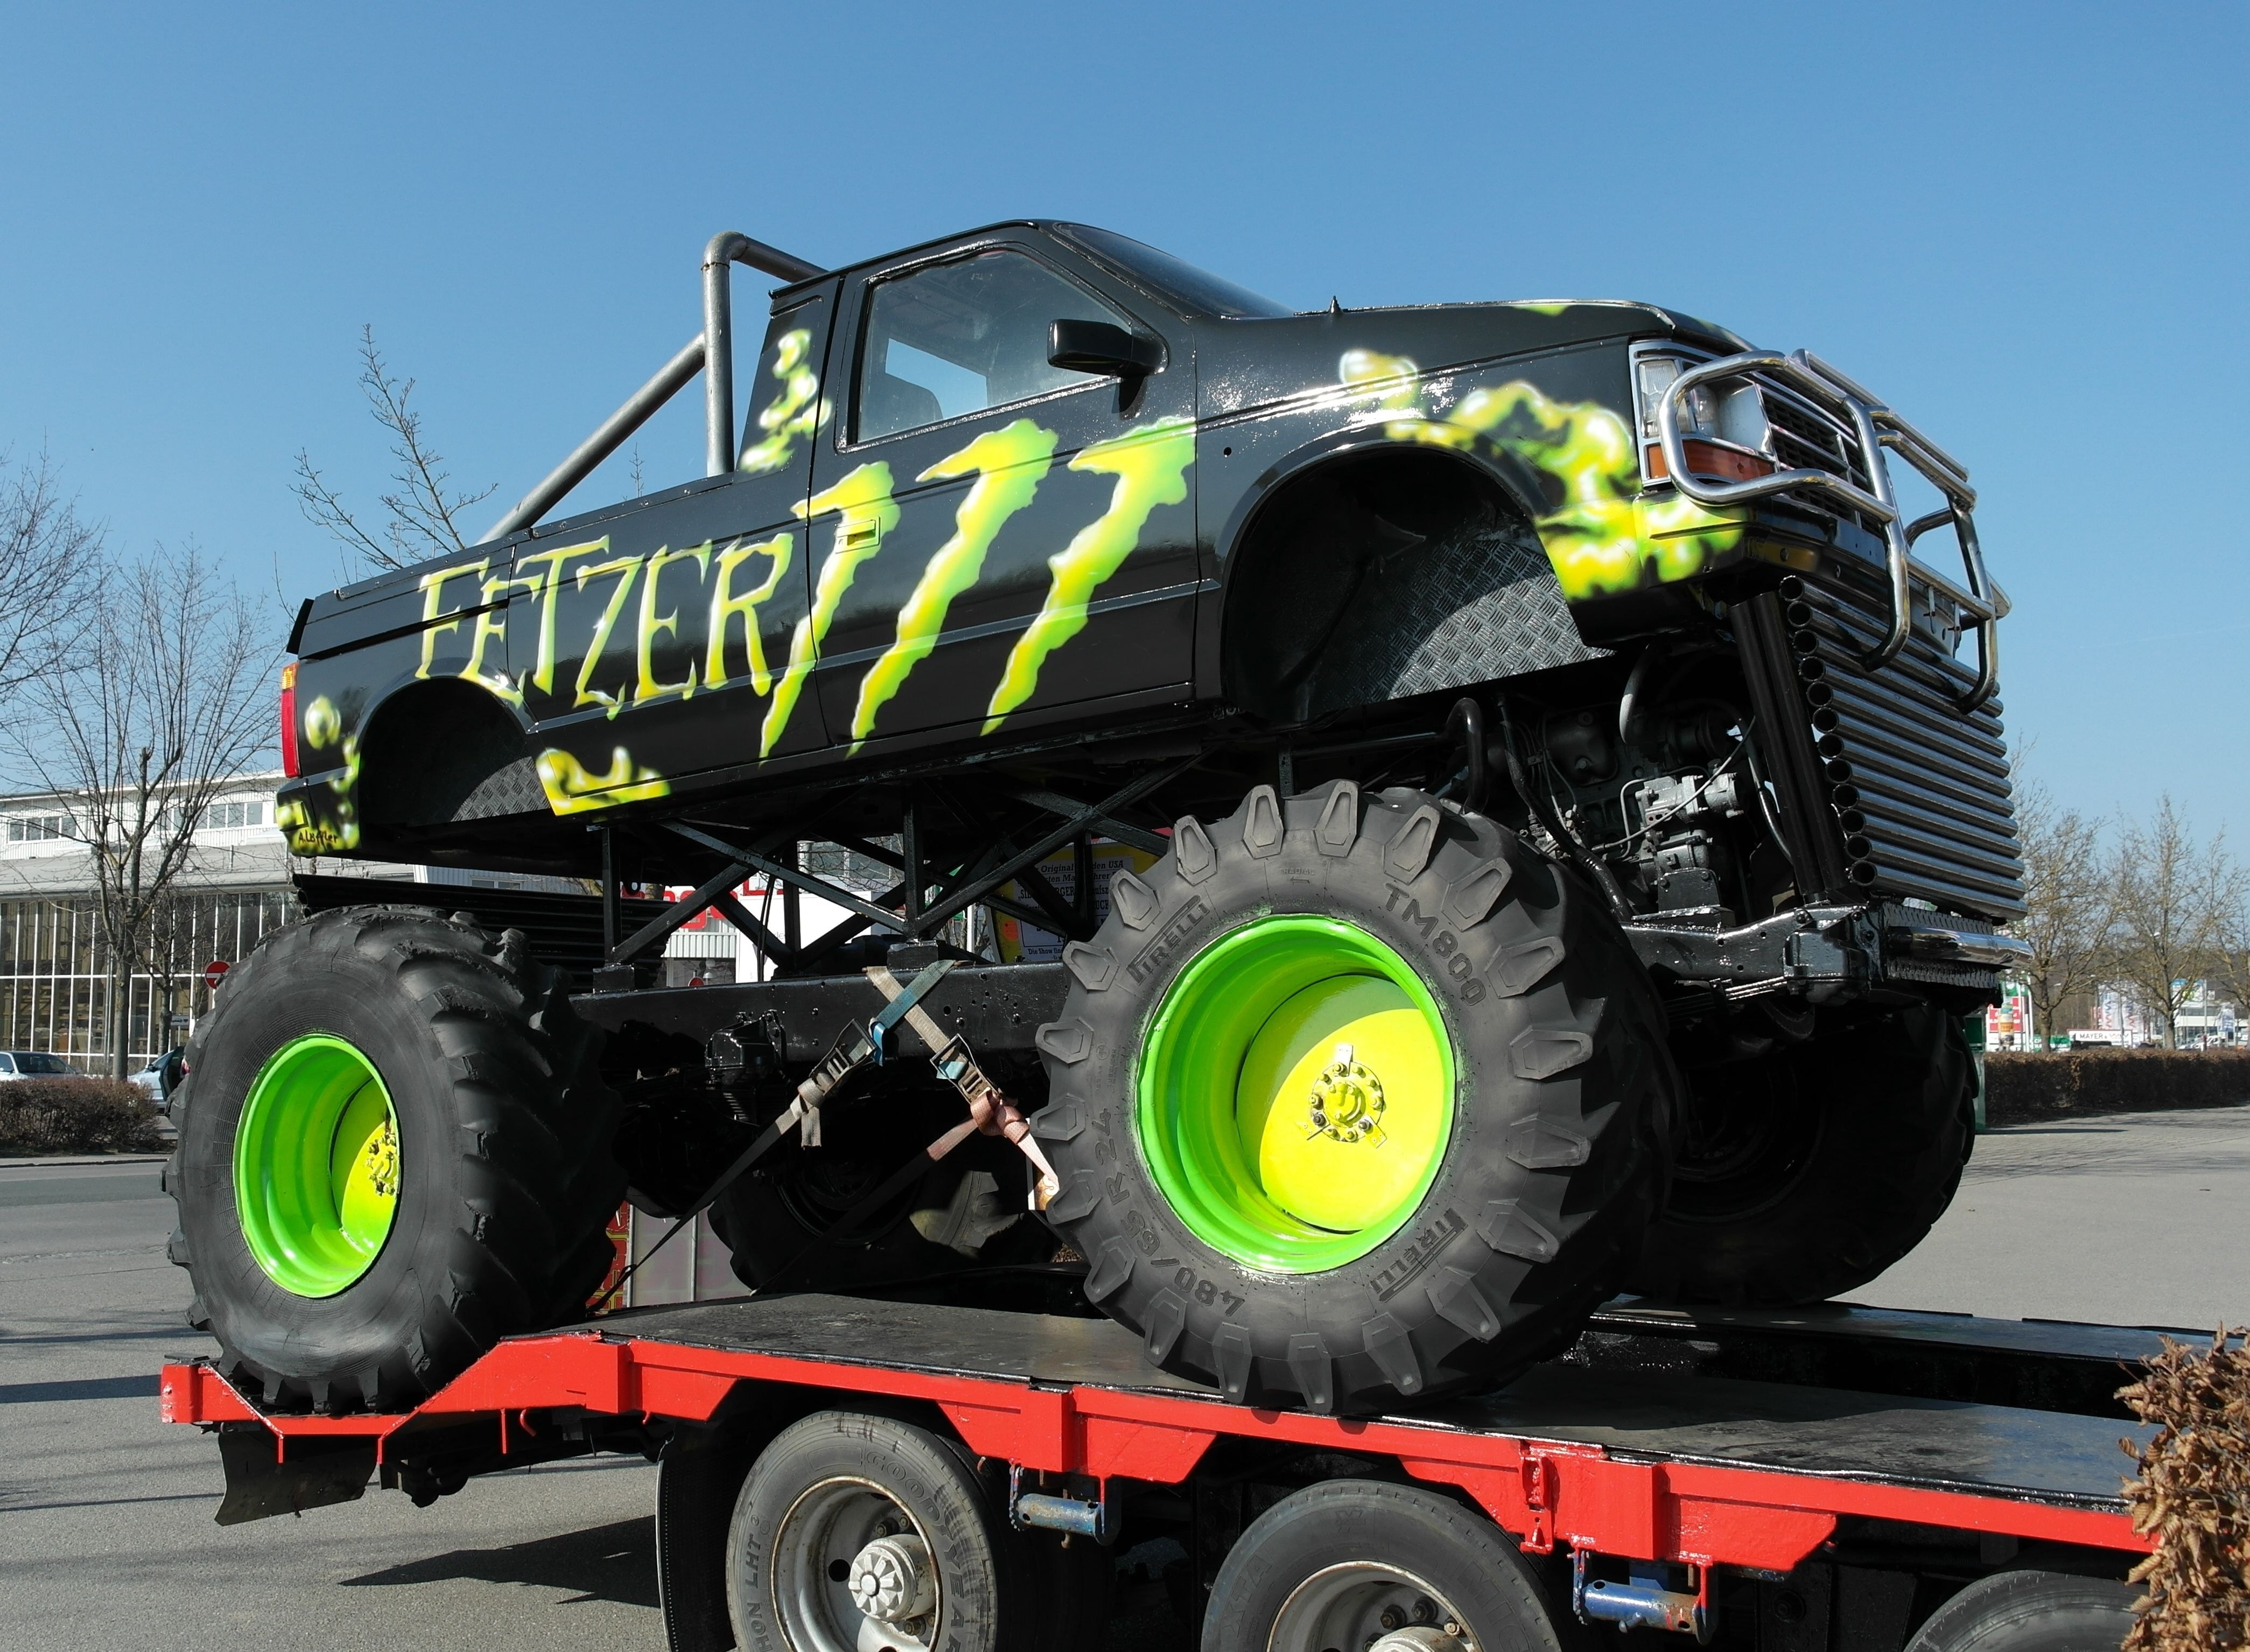 black and green fetzer monster truck